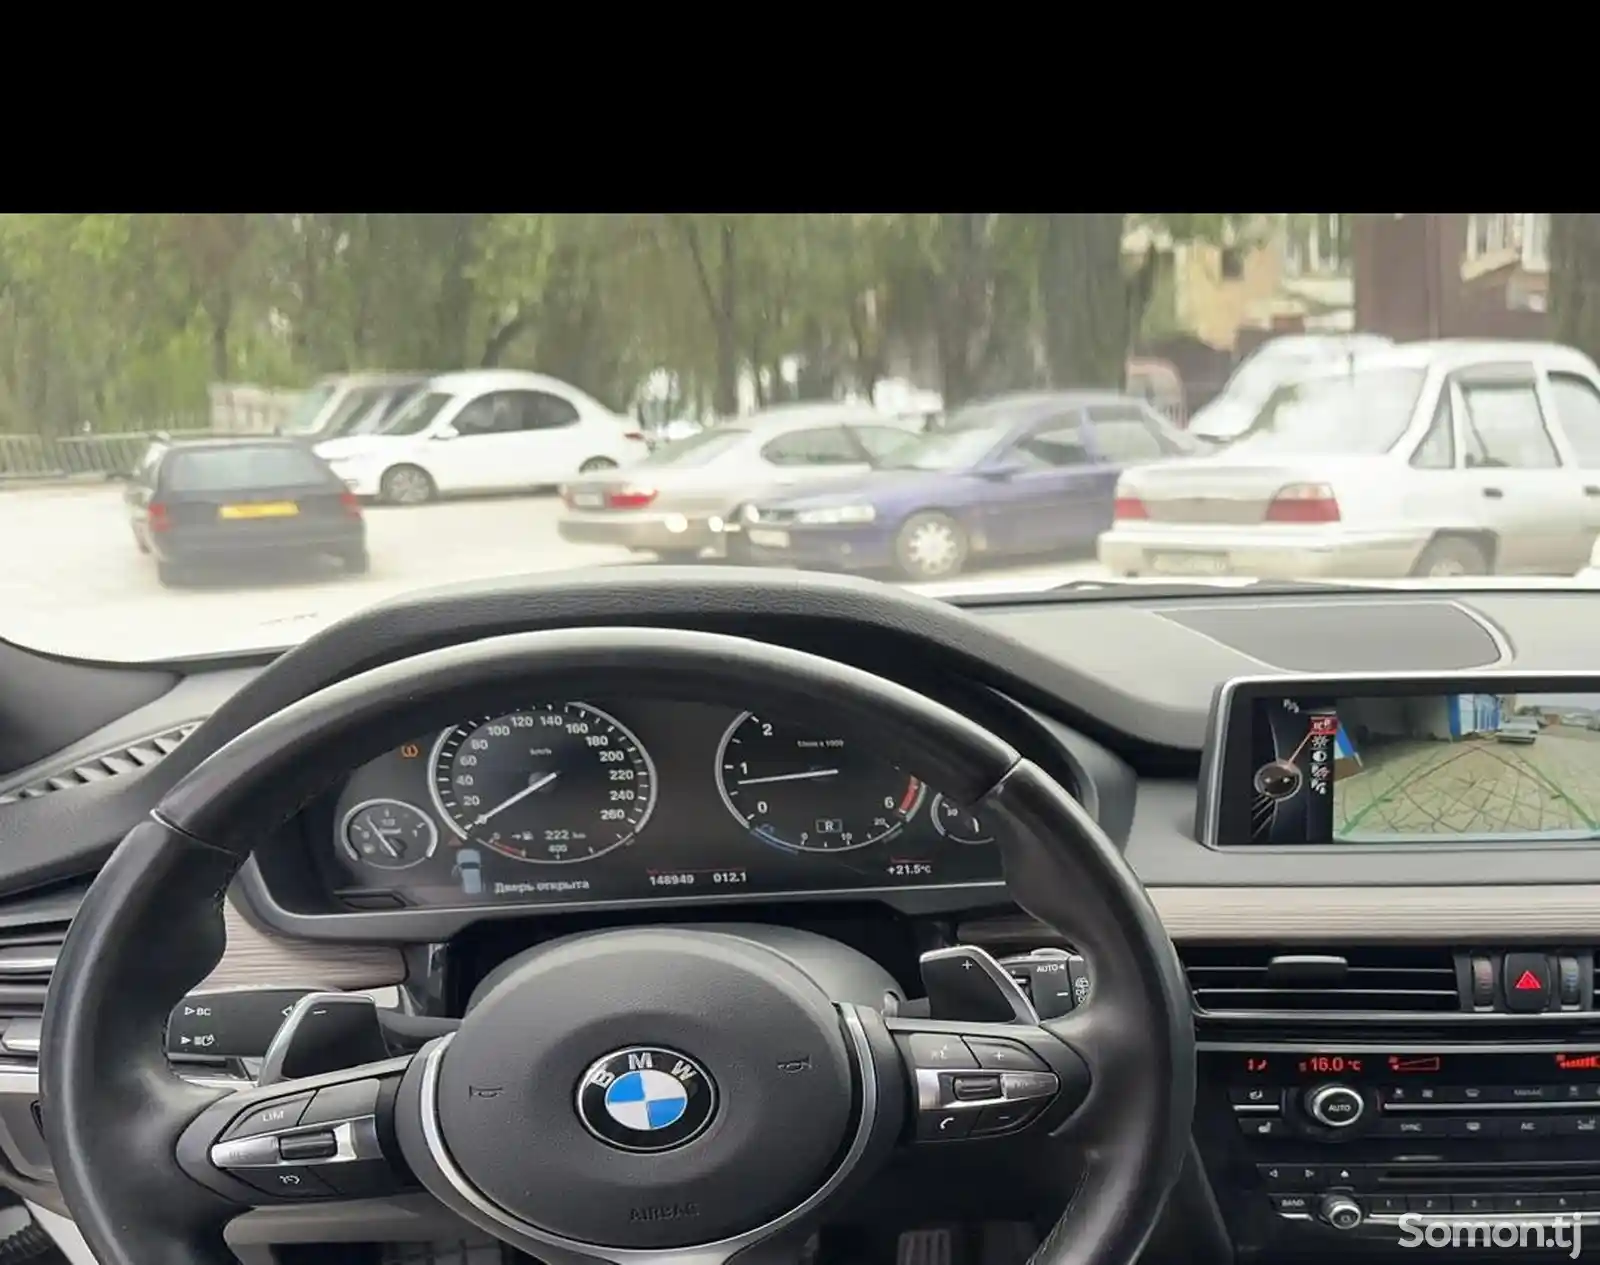 BMW X5, 2016-13